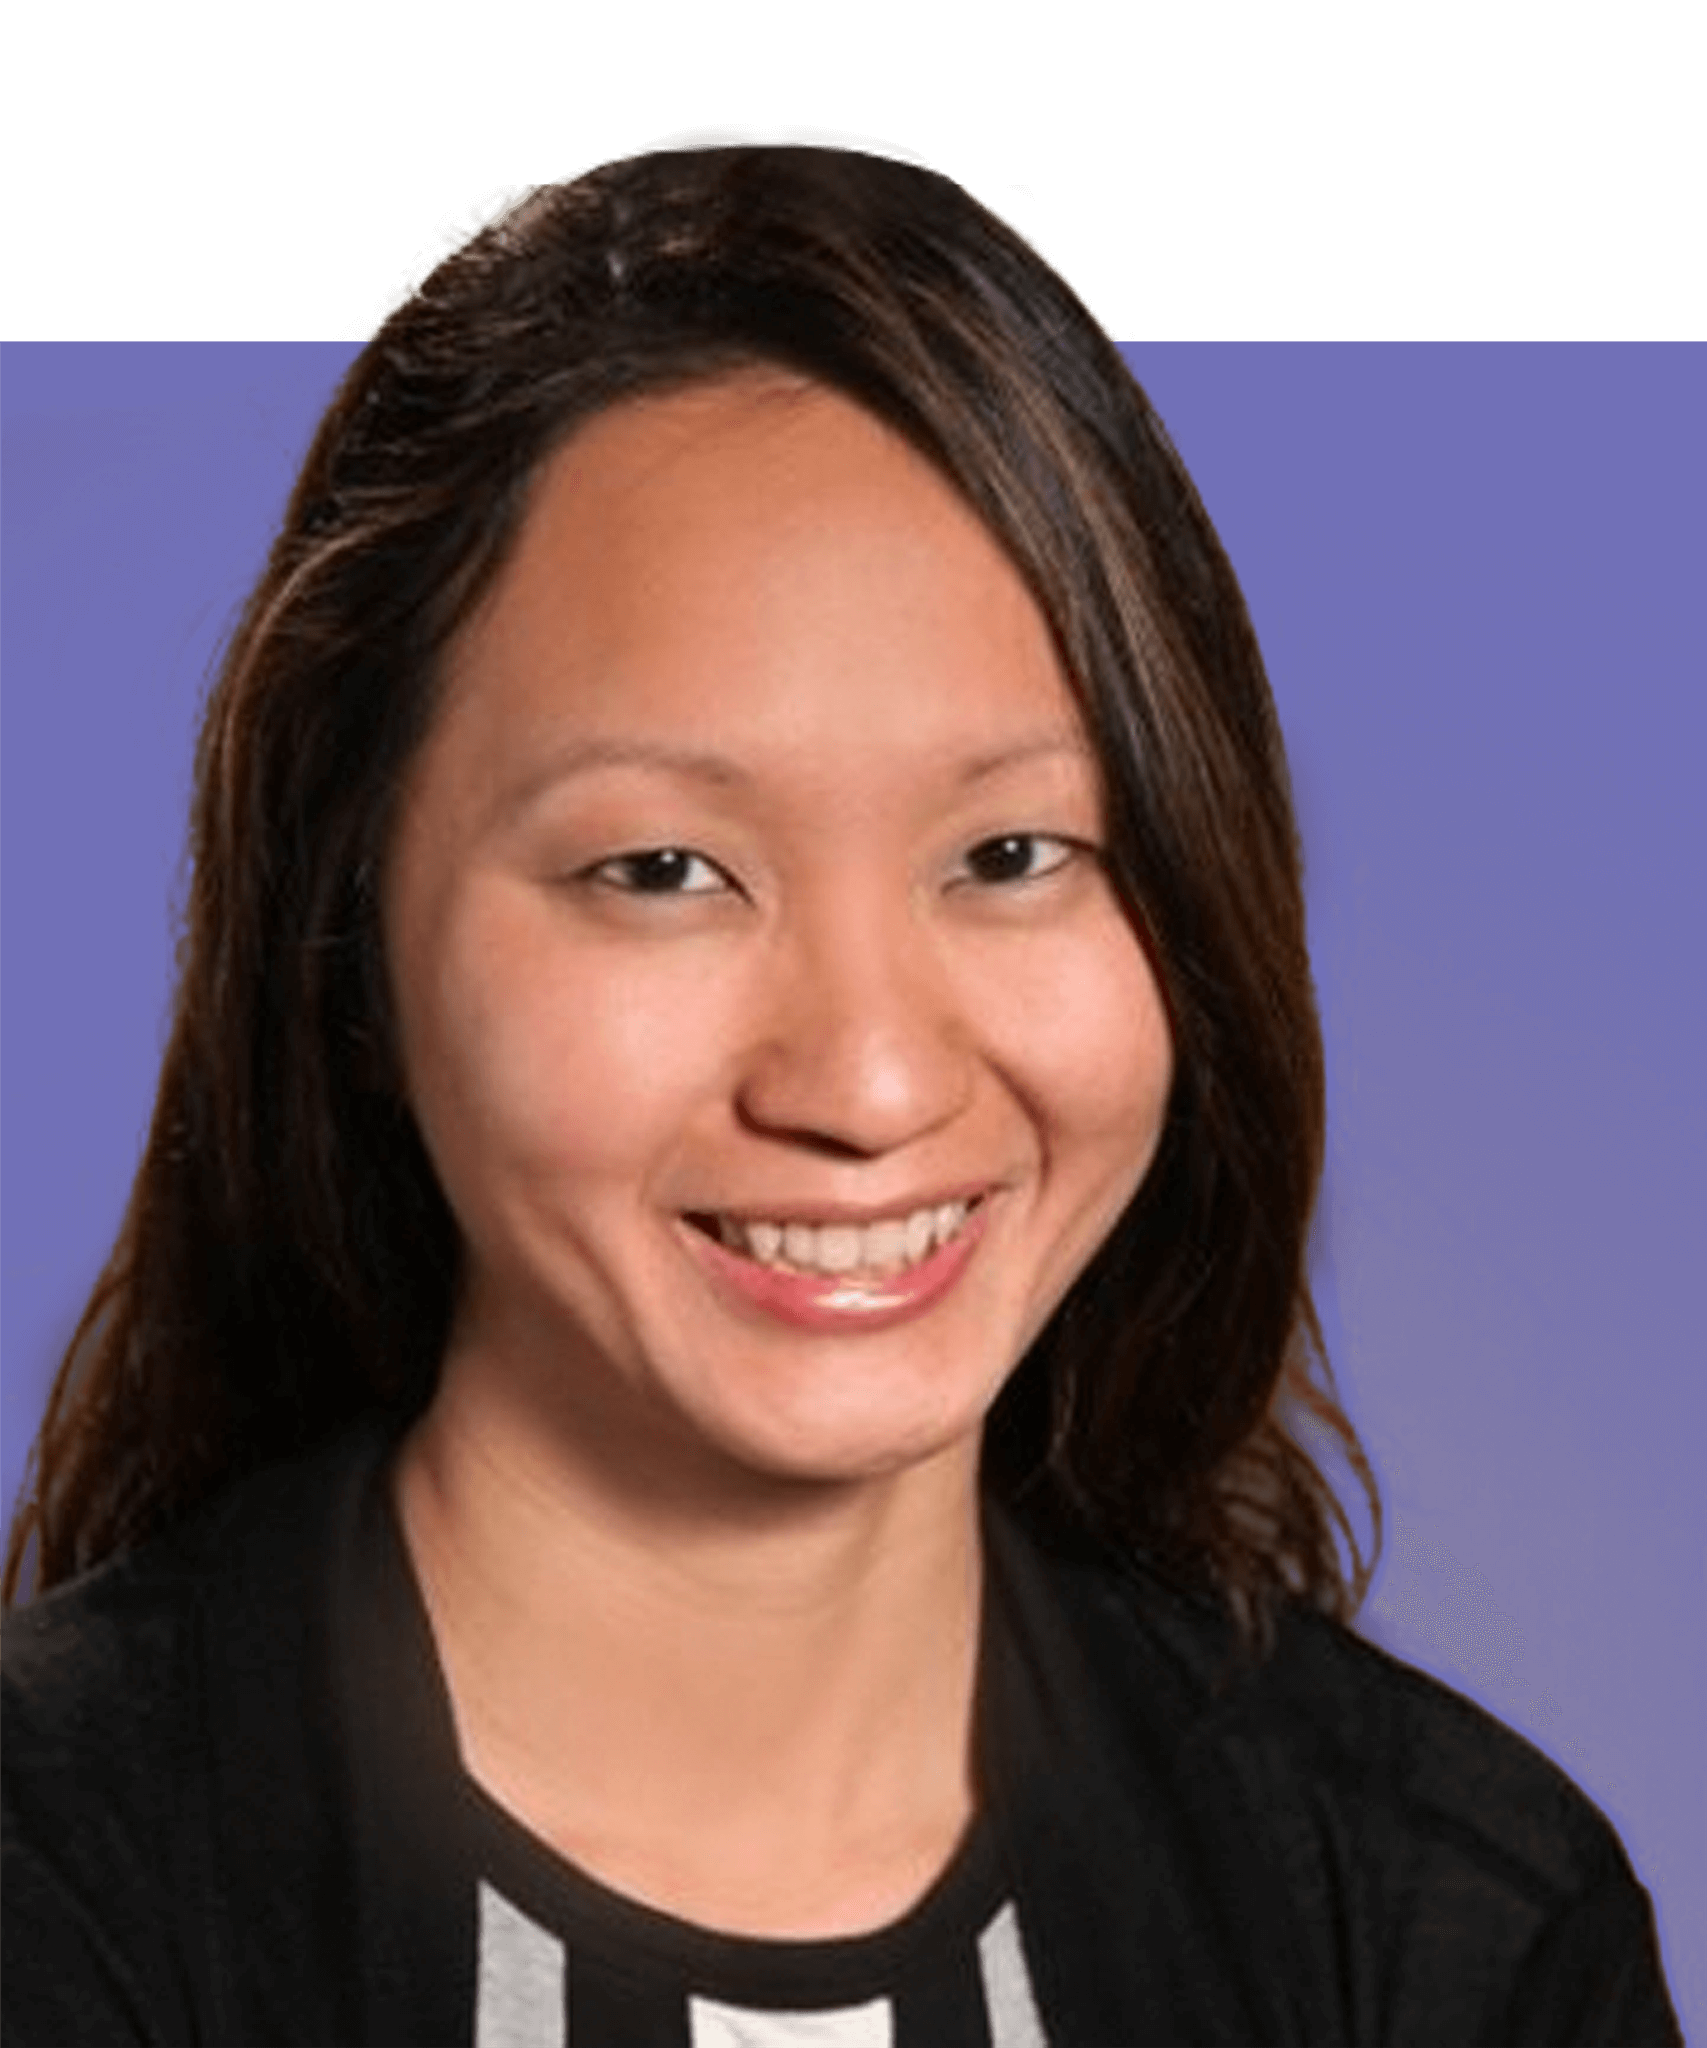 Kopfbild von Jacelyn Seng, der Leiterin von North America Health. Sie ist eine asiatische Frau mit langen dunklen Haaren und braunen Augen. Sie trägt ein gestreiftes schwarzes Oberteil und lächelt in die Kamera.